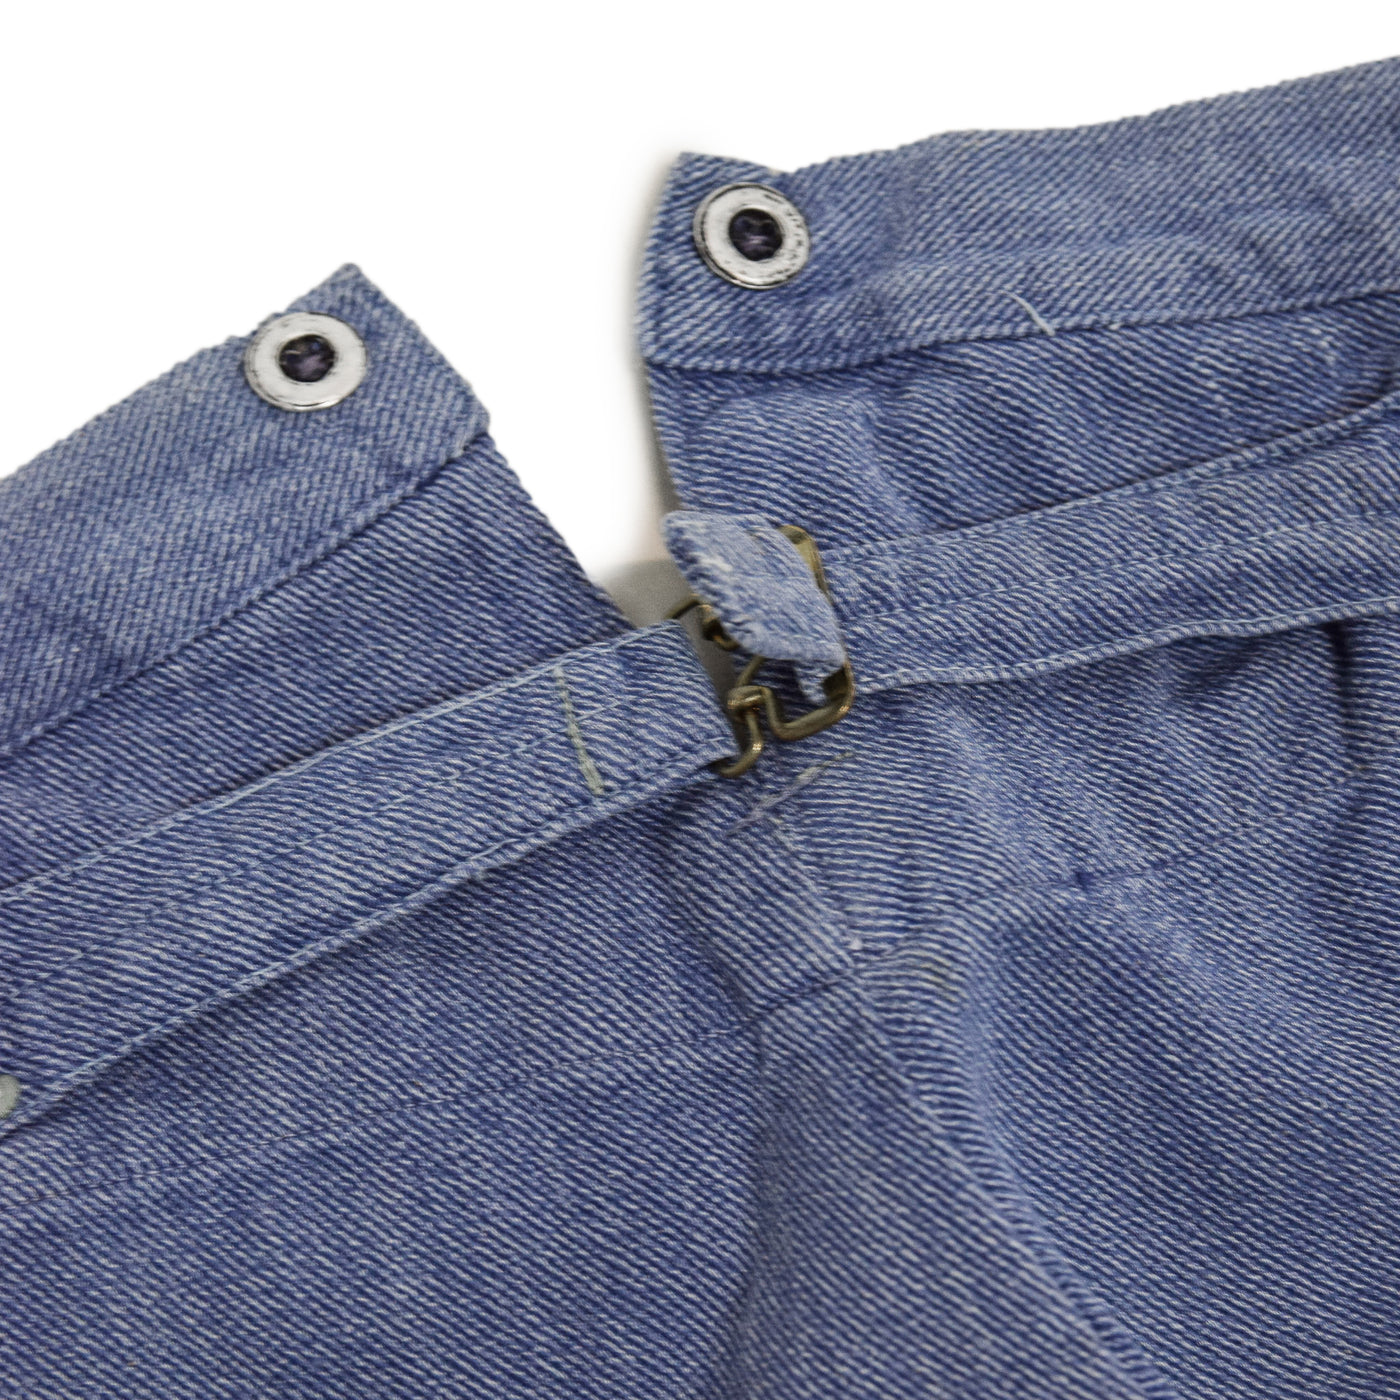 Vintage 60s Swiss Army Salt & Pepper Denim Fatigue Prison Pants L / XL cinch waist